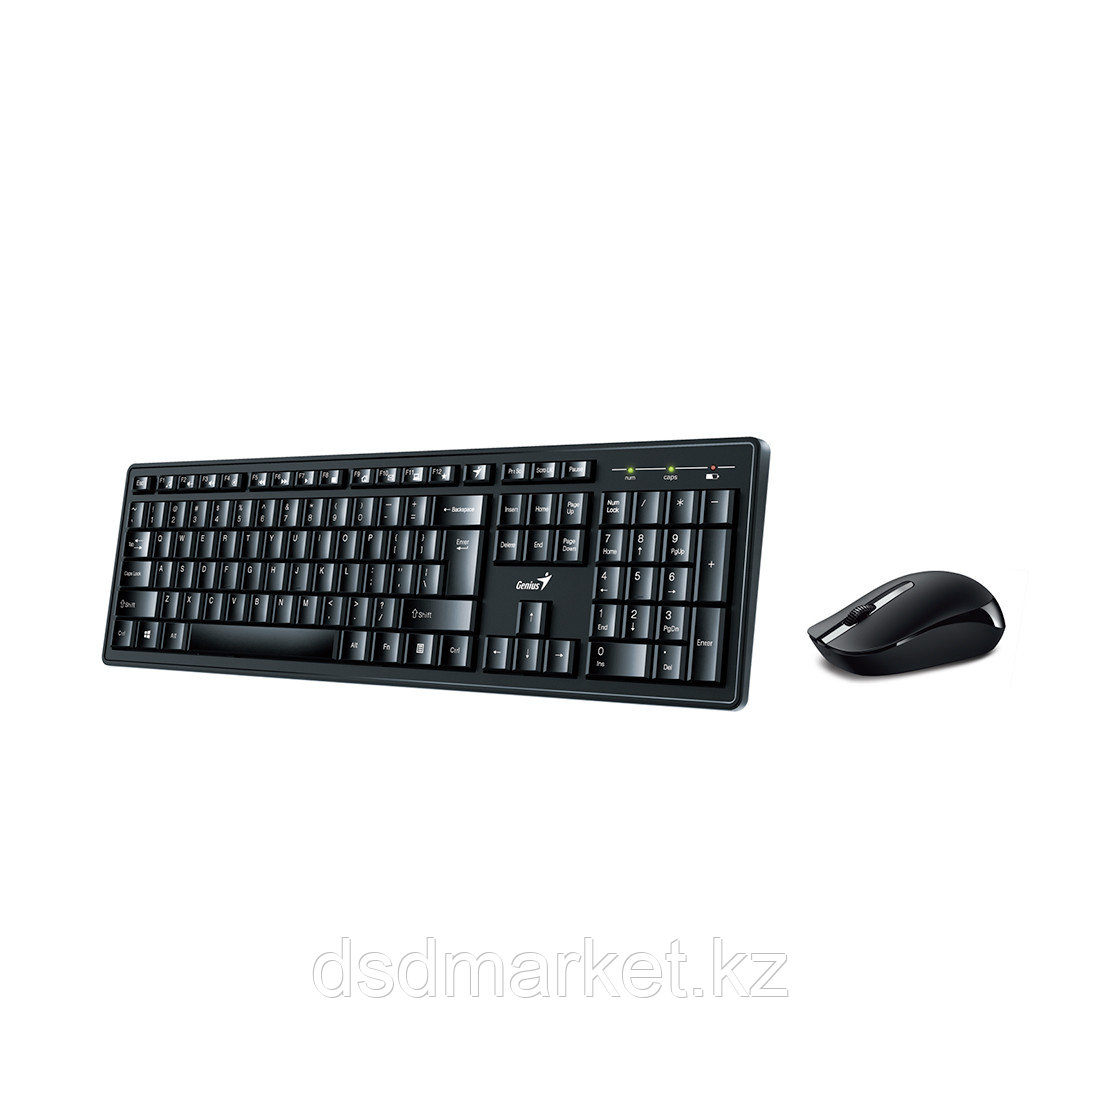 Комплект Клавиатура + Мышь, Genius, Smart KM-8200